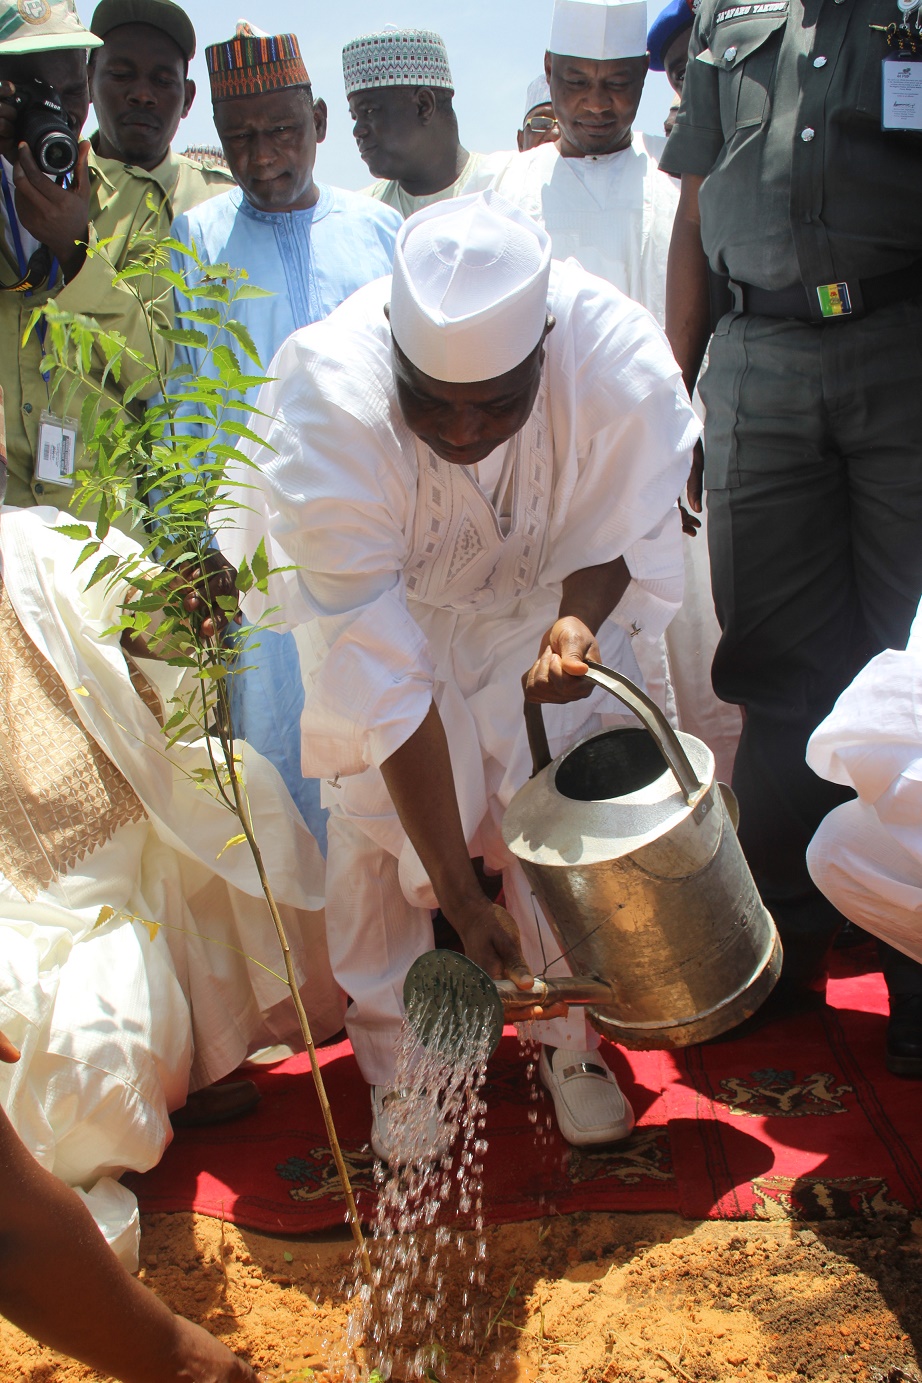 Governor Aminu Waziri Tambuwal planting a tree to flag-off the 2015 tree planting campaign in Kawadata, Goronyo LGA of Sokoto State.